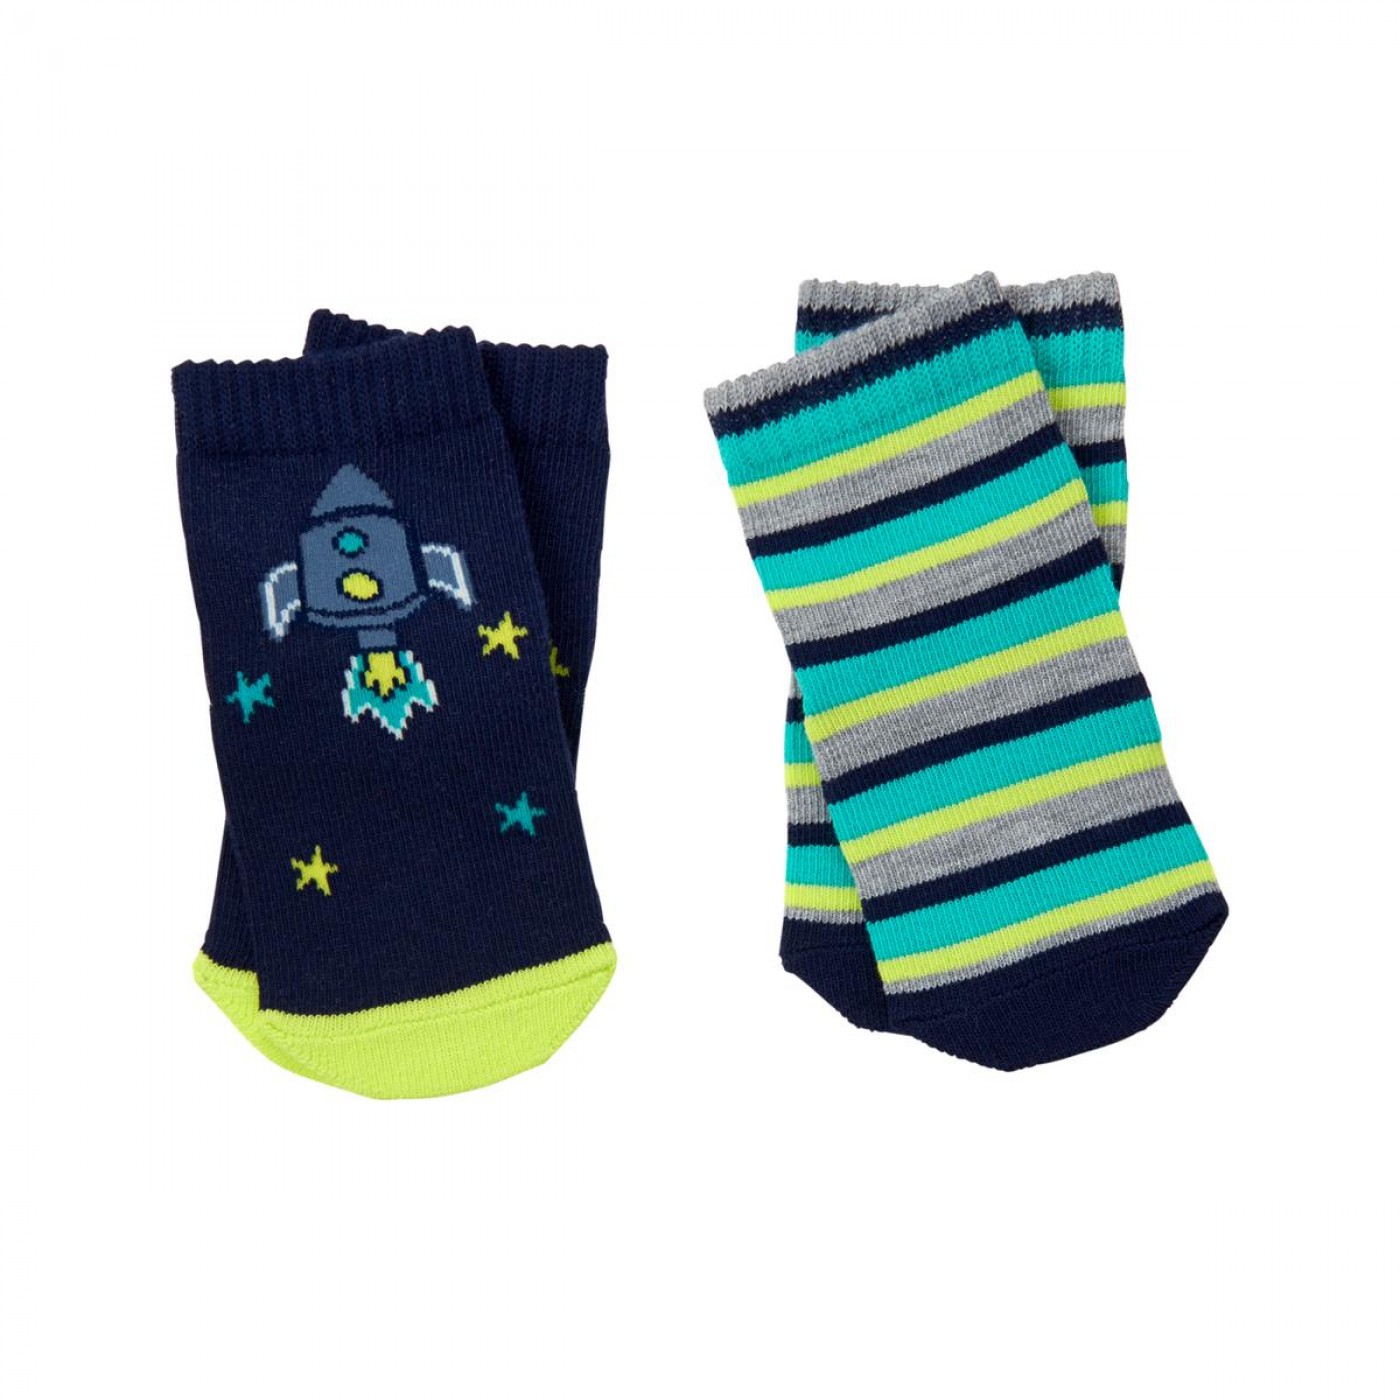 火箭條紋襪子兩件組